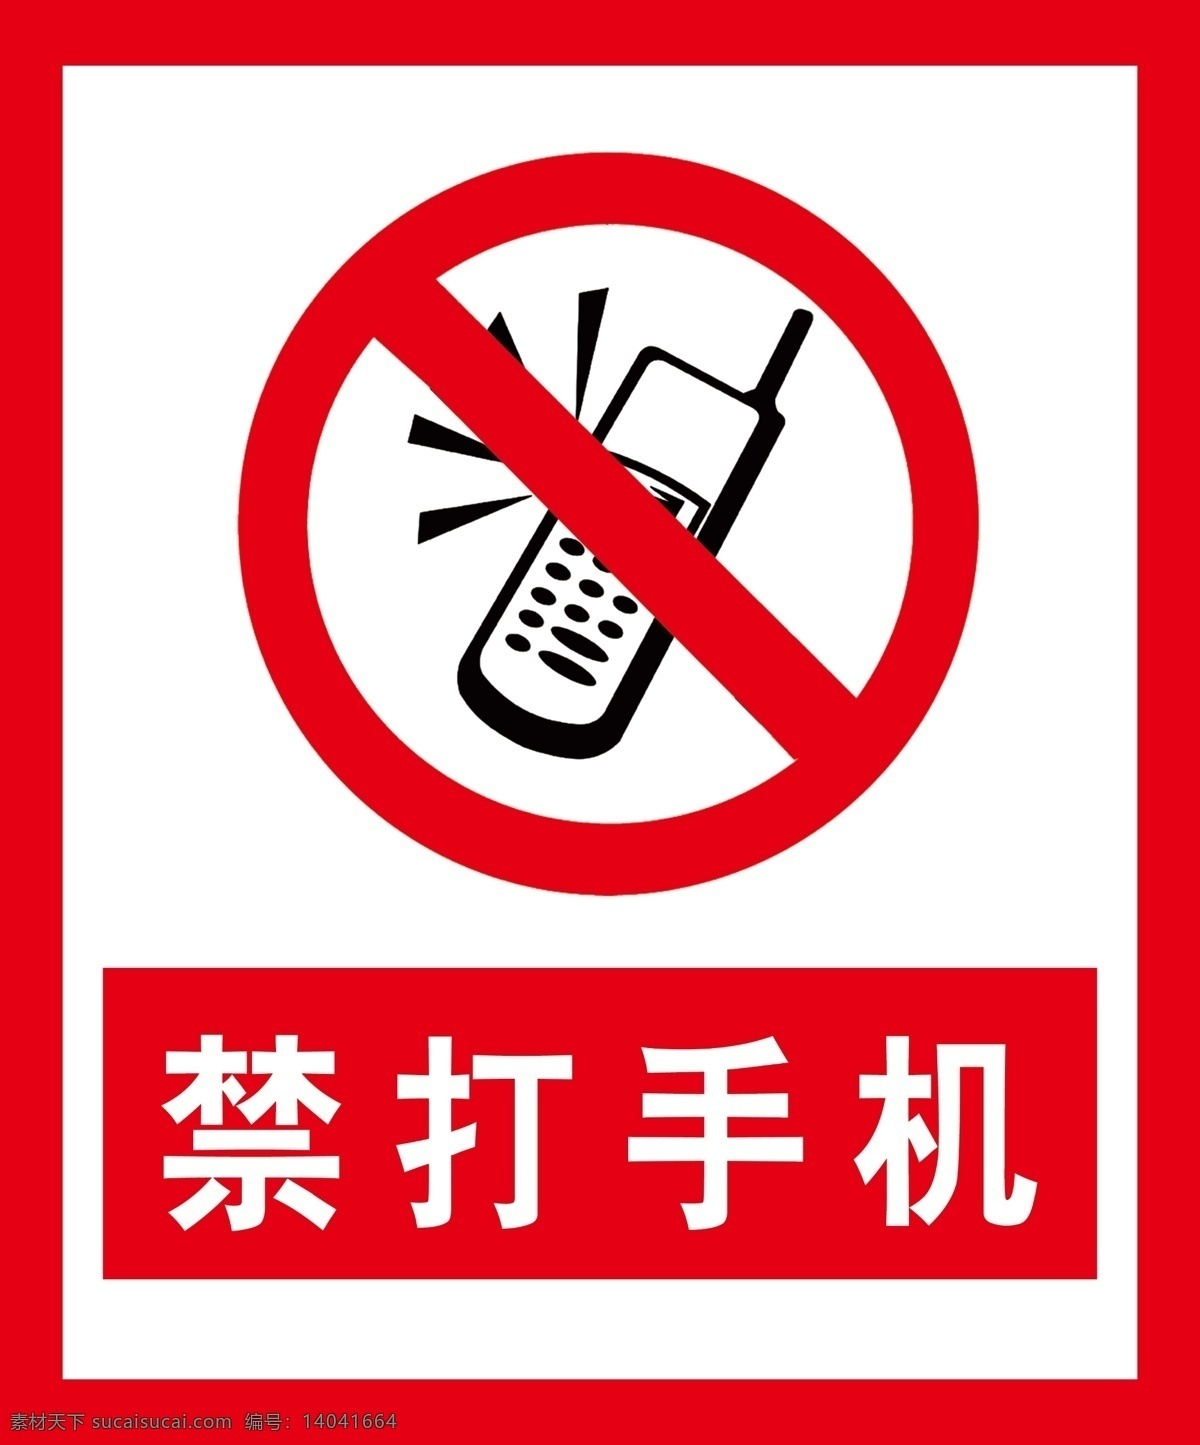 禁止打手机 油库标识标牌 禁止手机 标牌 标识 室外广告设计